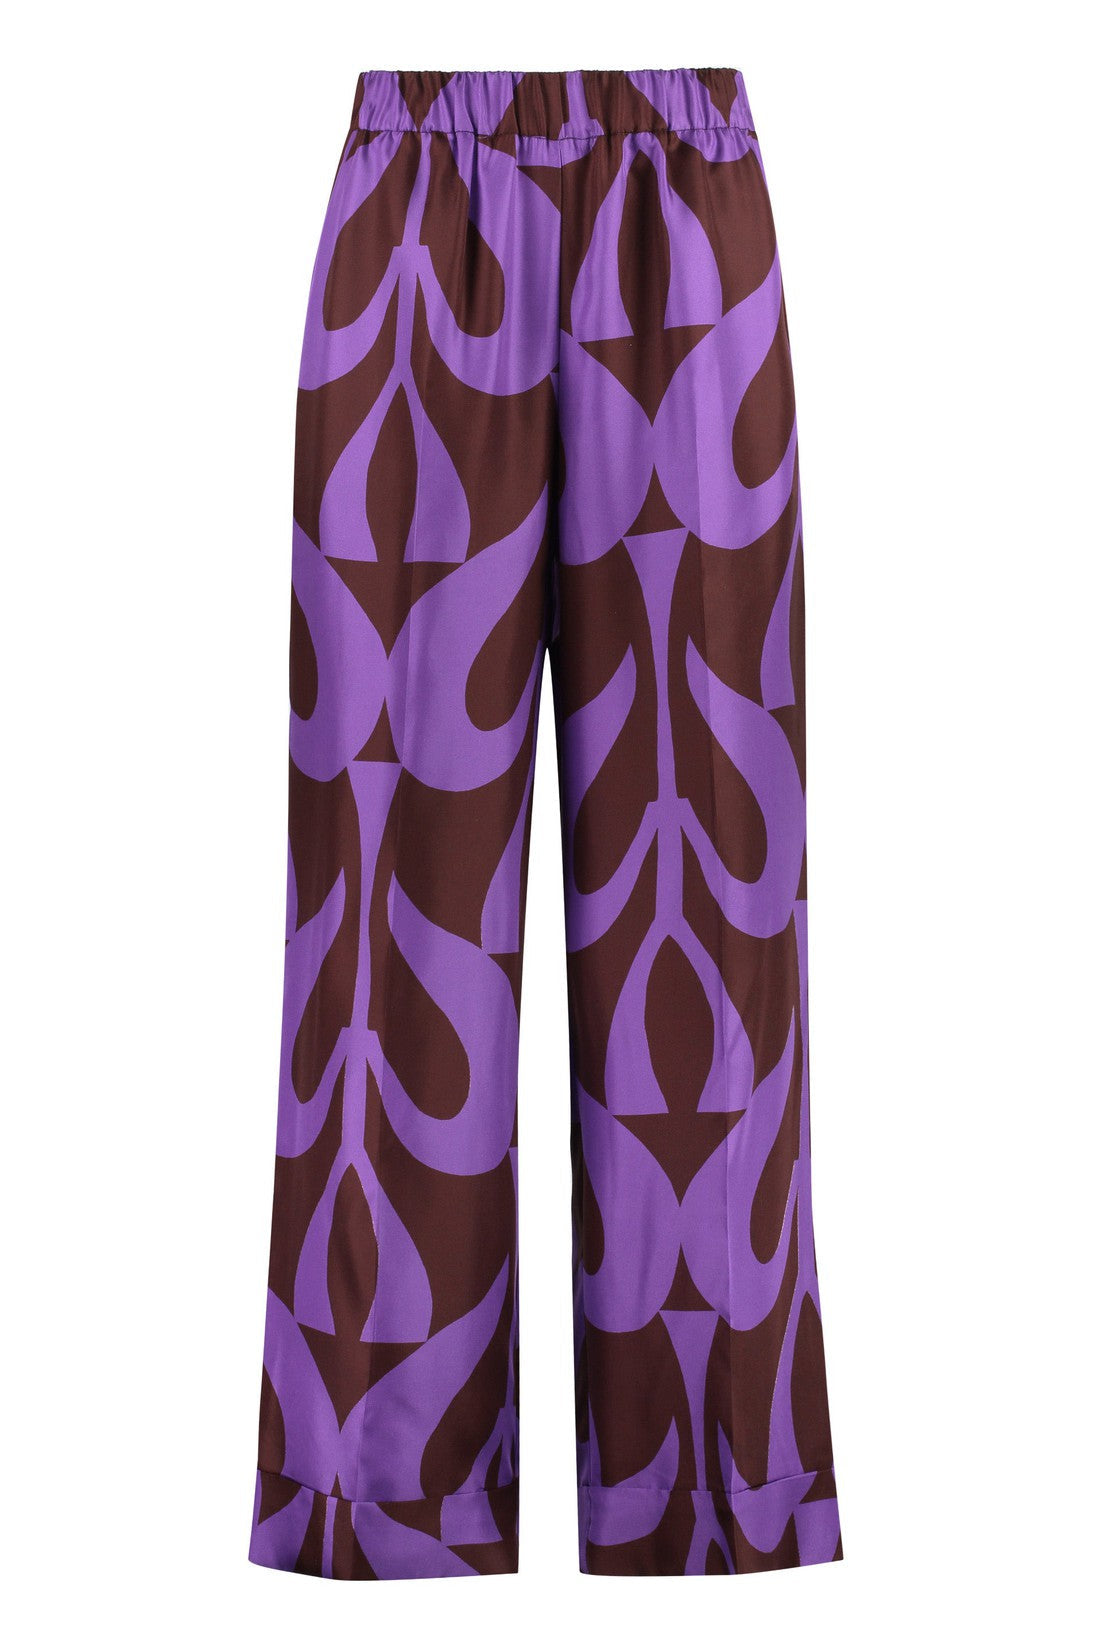 Parosh-OUTLET-SALE-Printed silk pants-ARCHIVIST